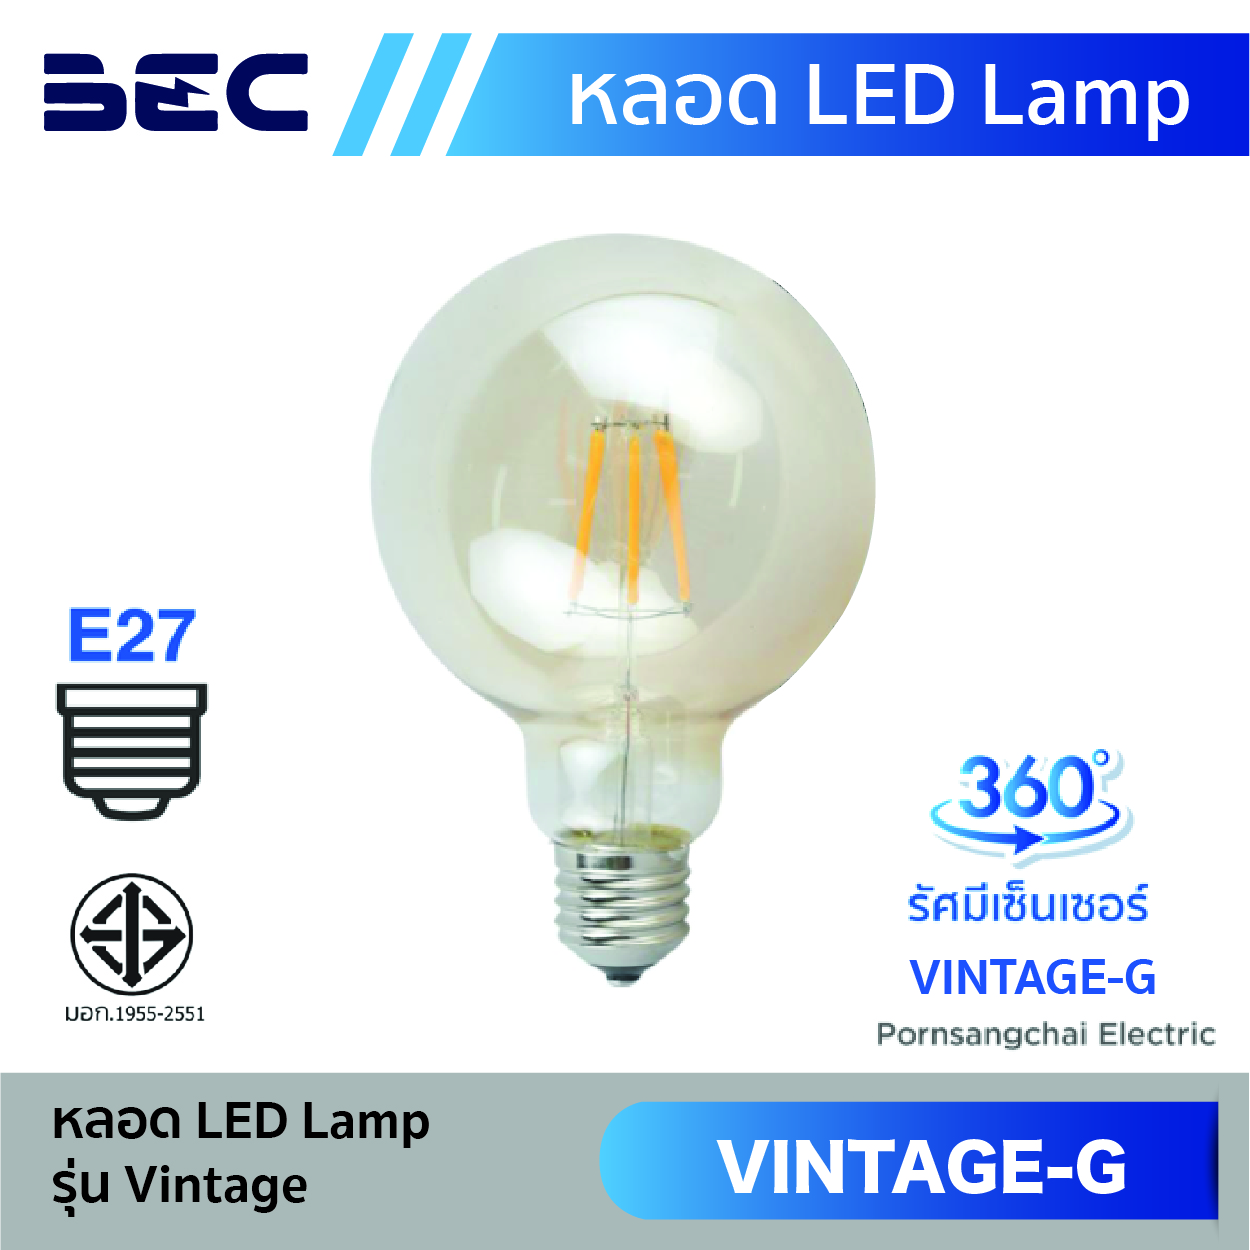 หลอดไฟ LED Lamp BEC รุ่น Vintage-G